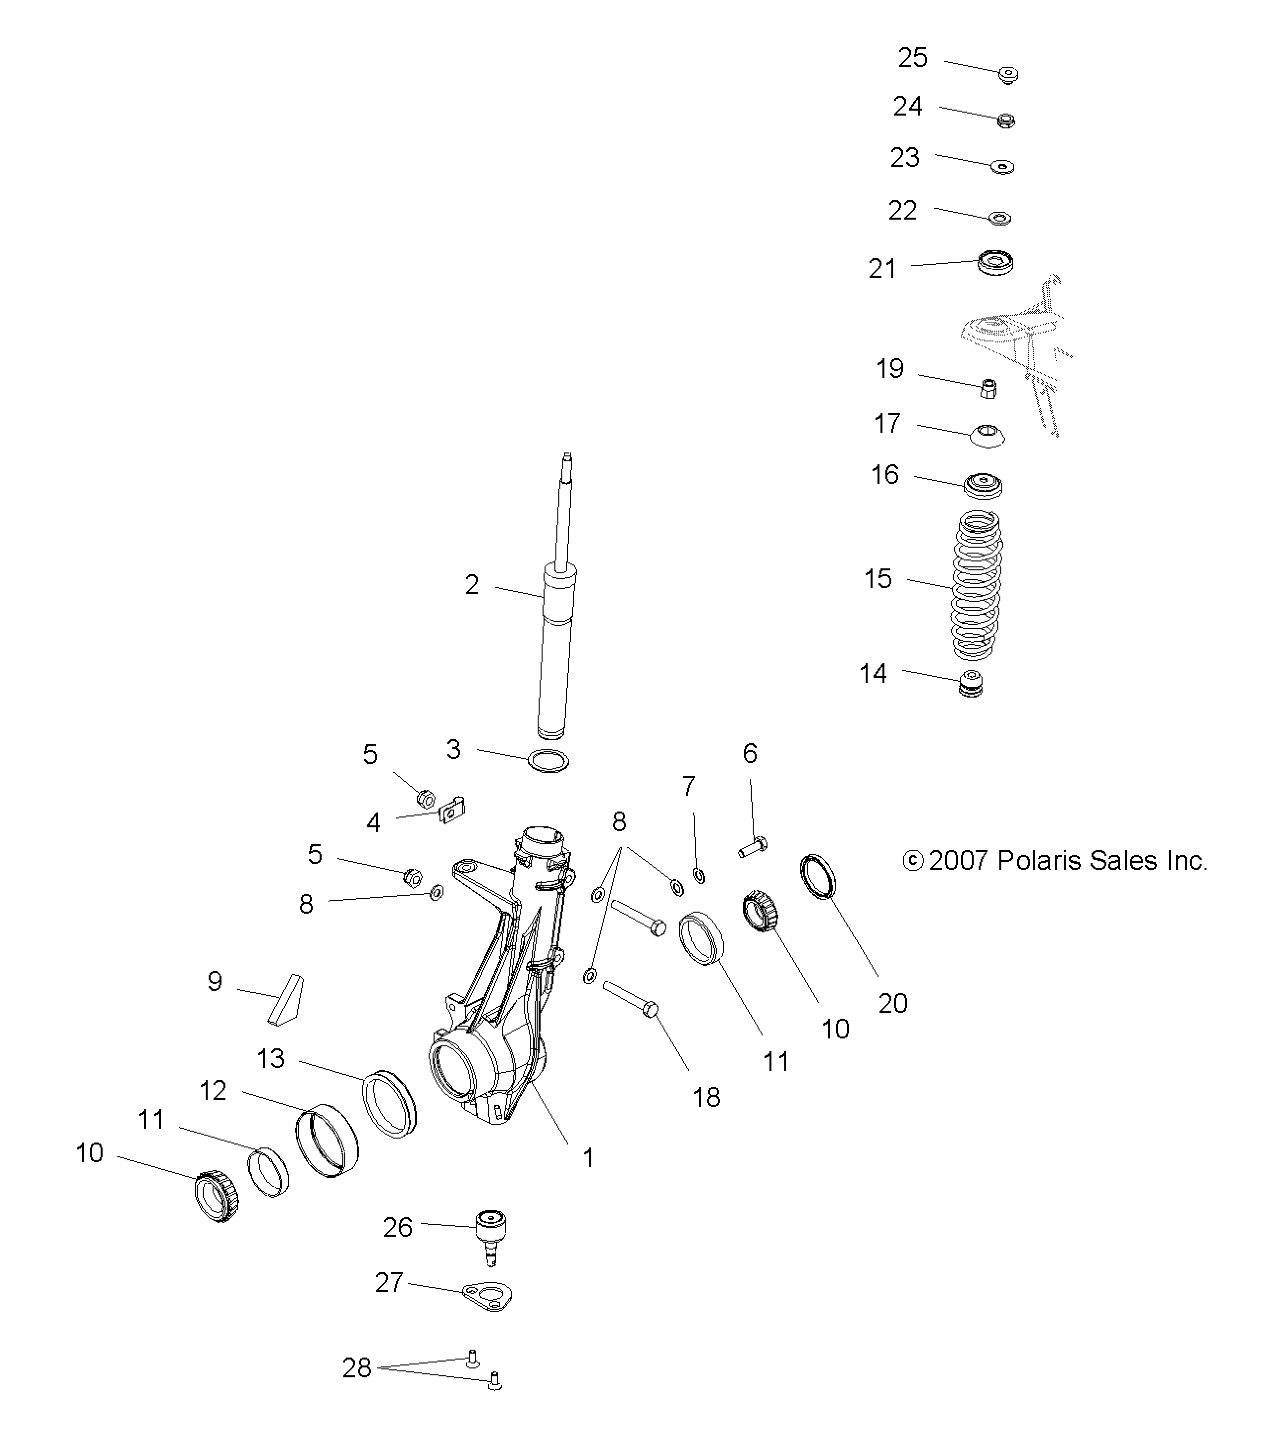 Foto diagrama Polaris que contem a peça 3554507